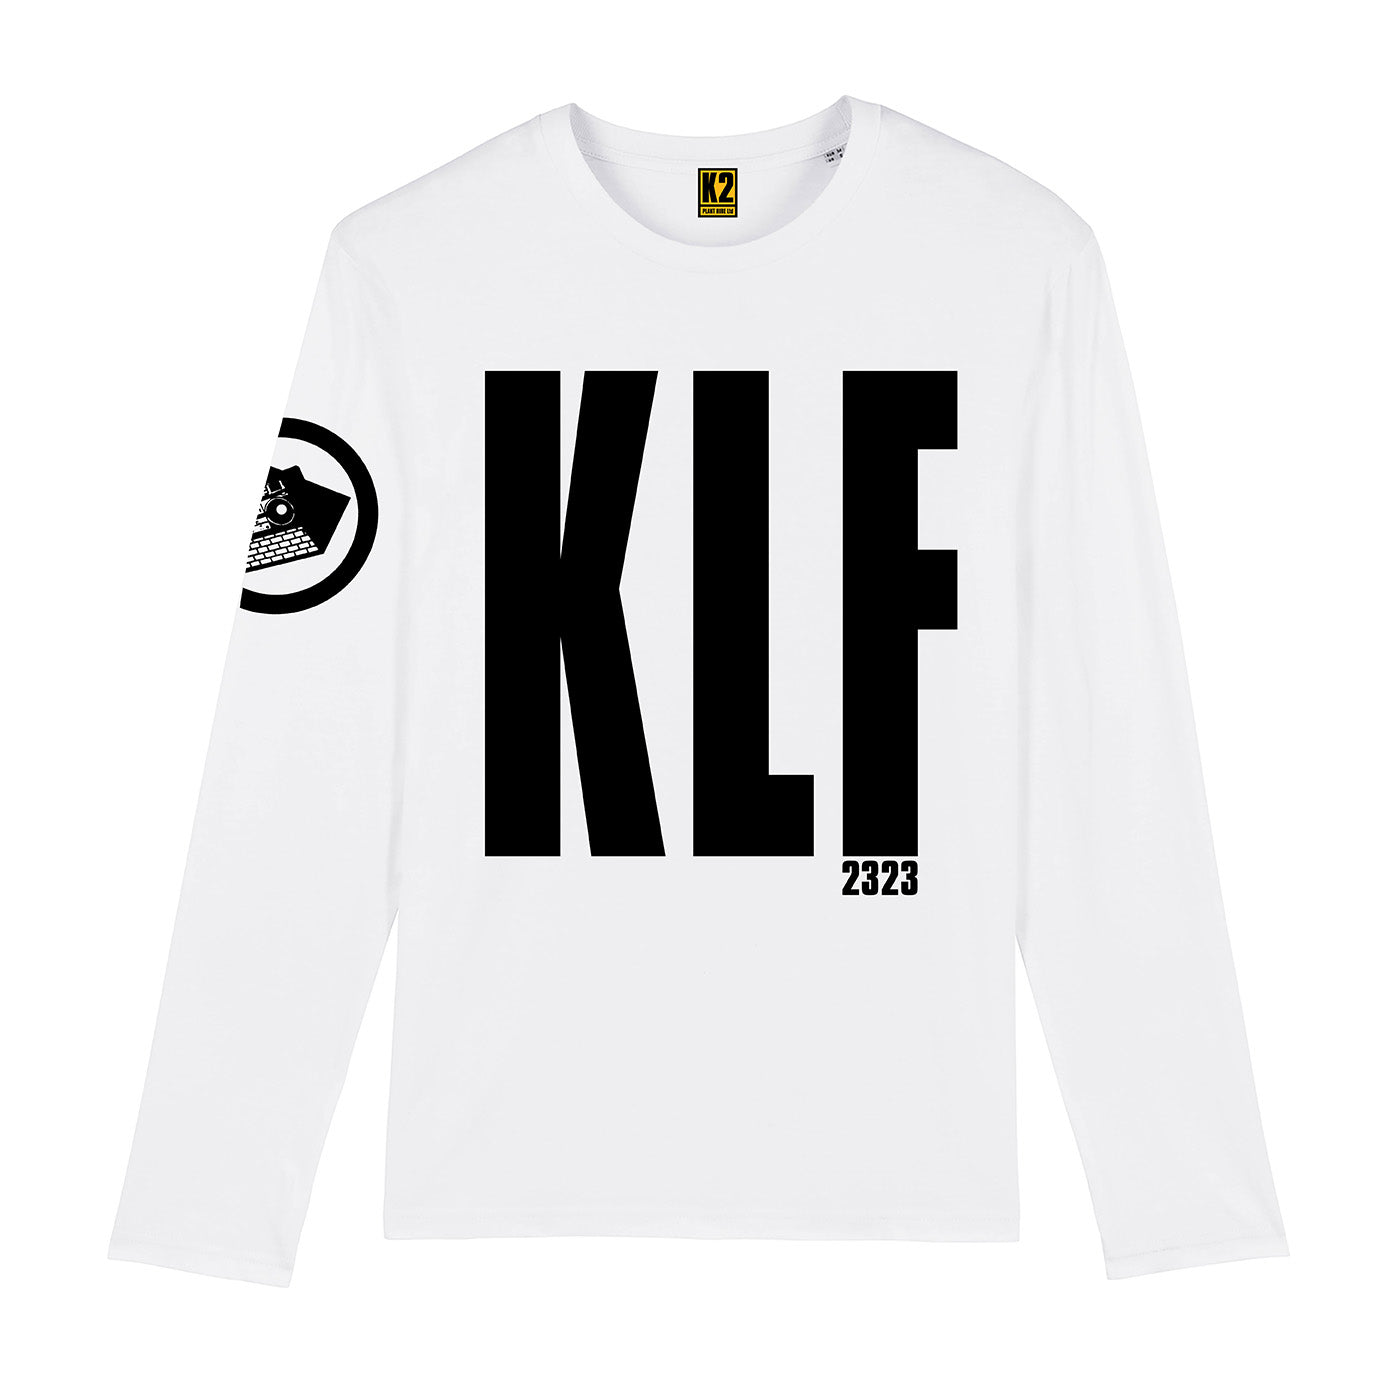 The KLF 2323 Official World Tour Long-Sleeve T-shirt